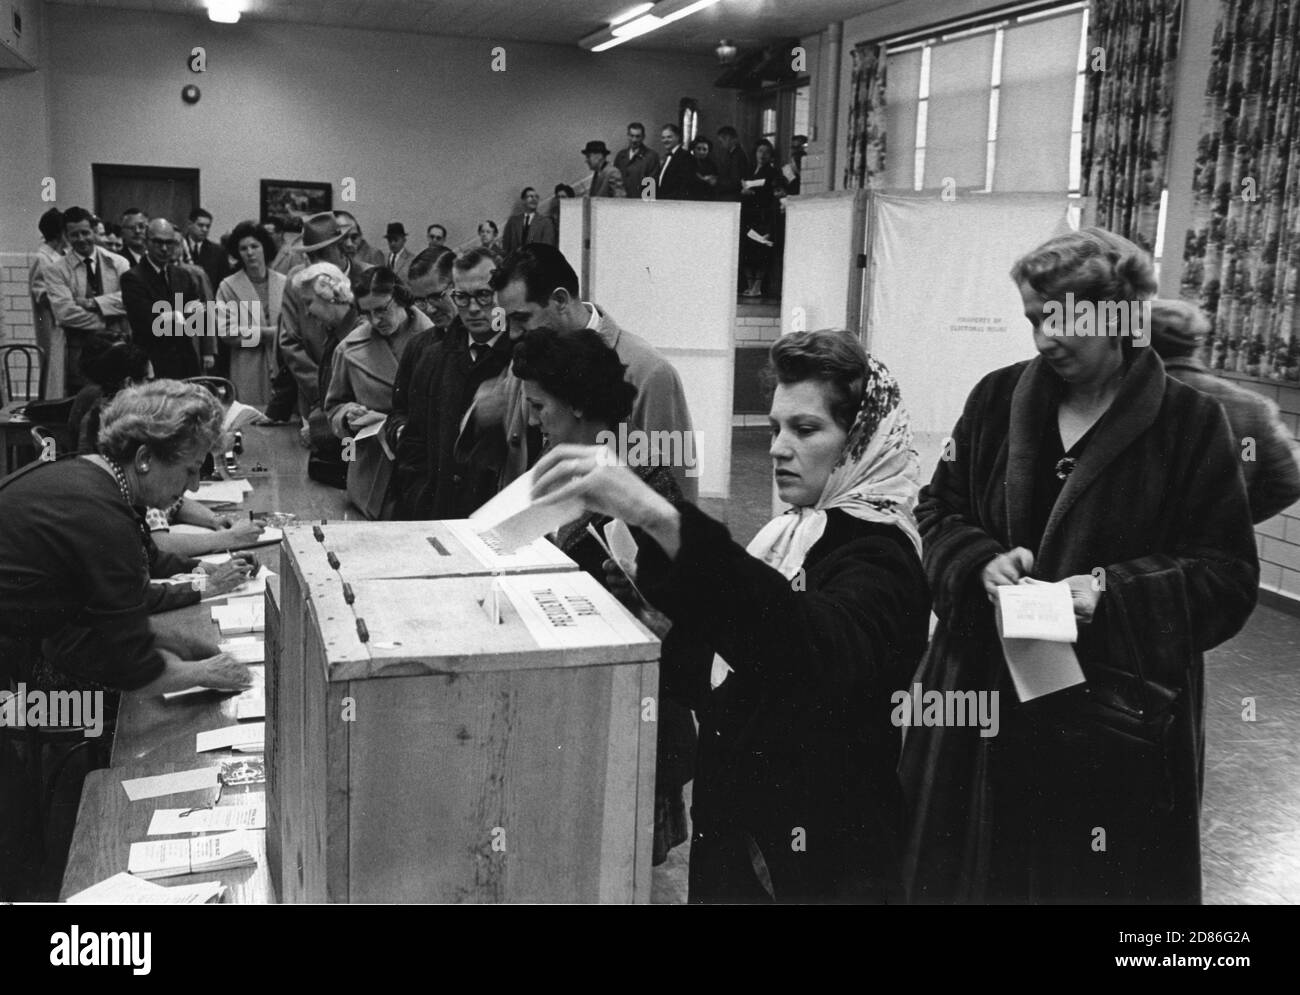 Die Wähler stehen am Wahltag an, um sich mit den Wahlbeamten zu erkundigen und Stimmzettel zu erhalten, auf denen sie ihre Stimmen abgeben können. Frau im Vordergrund hat ihre Stimmzettel markiert und trägt sie in die richtigen Boxen - eine für den Präsidentschaftskandidaten und eine für den Kongresskandidaten Dunn Loring, VA 11/8/1960. (Foto von Edwin Huffman/United States Information Agency/RBM Vintage Images) Stockfoto